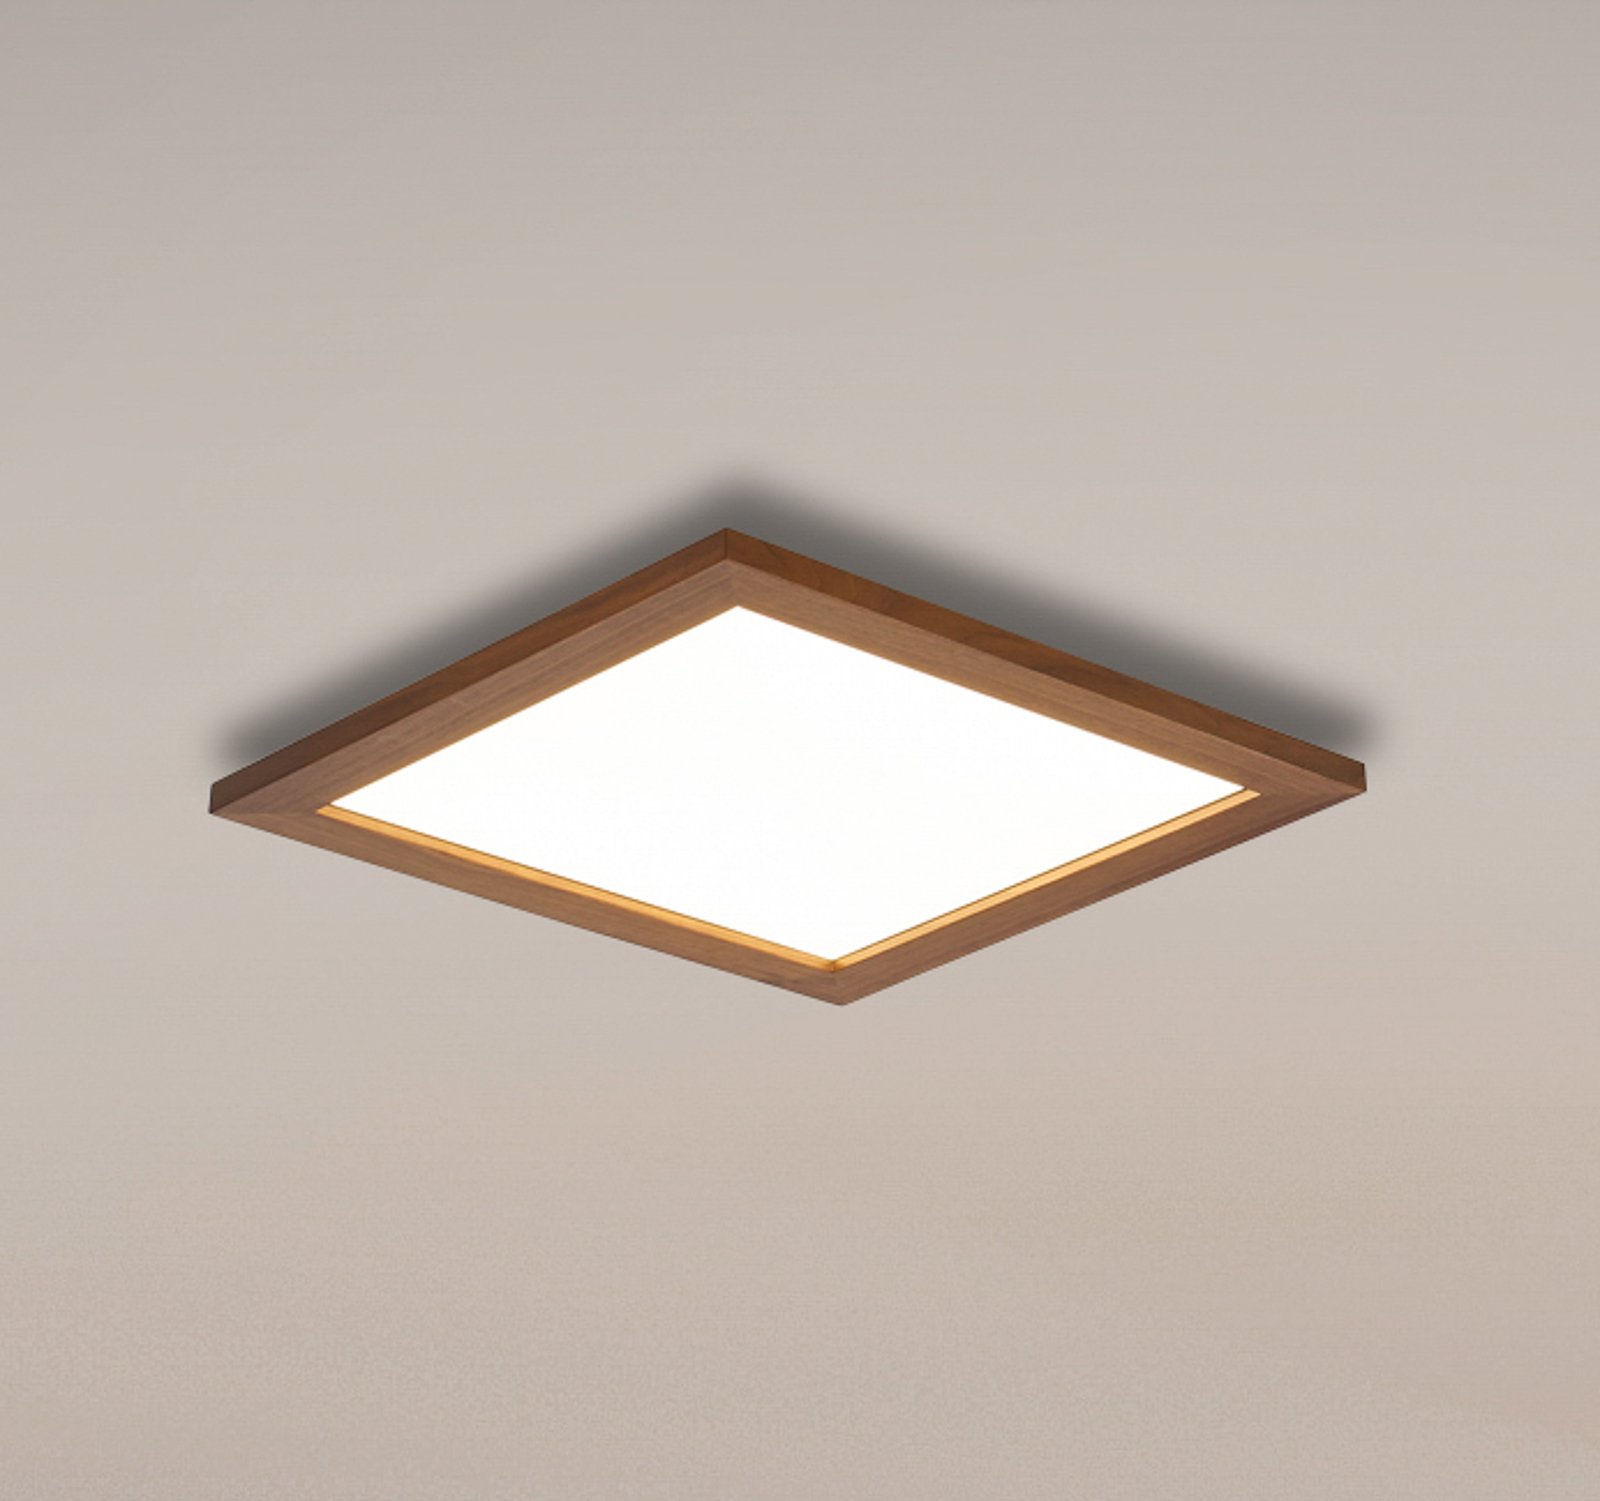 Quitani Aurinor LED-panel, valnöt, 45 cm